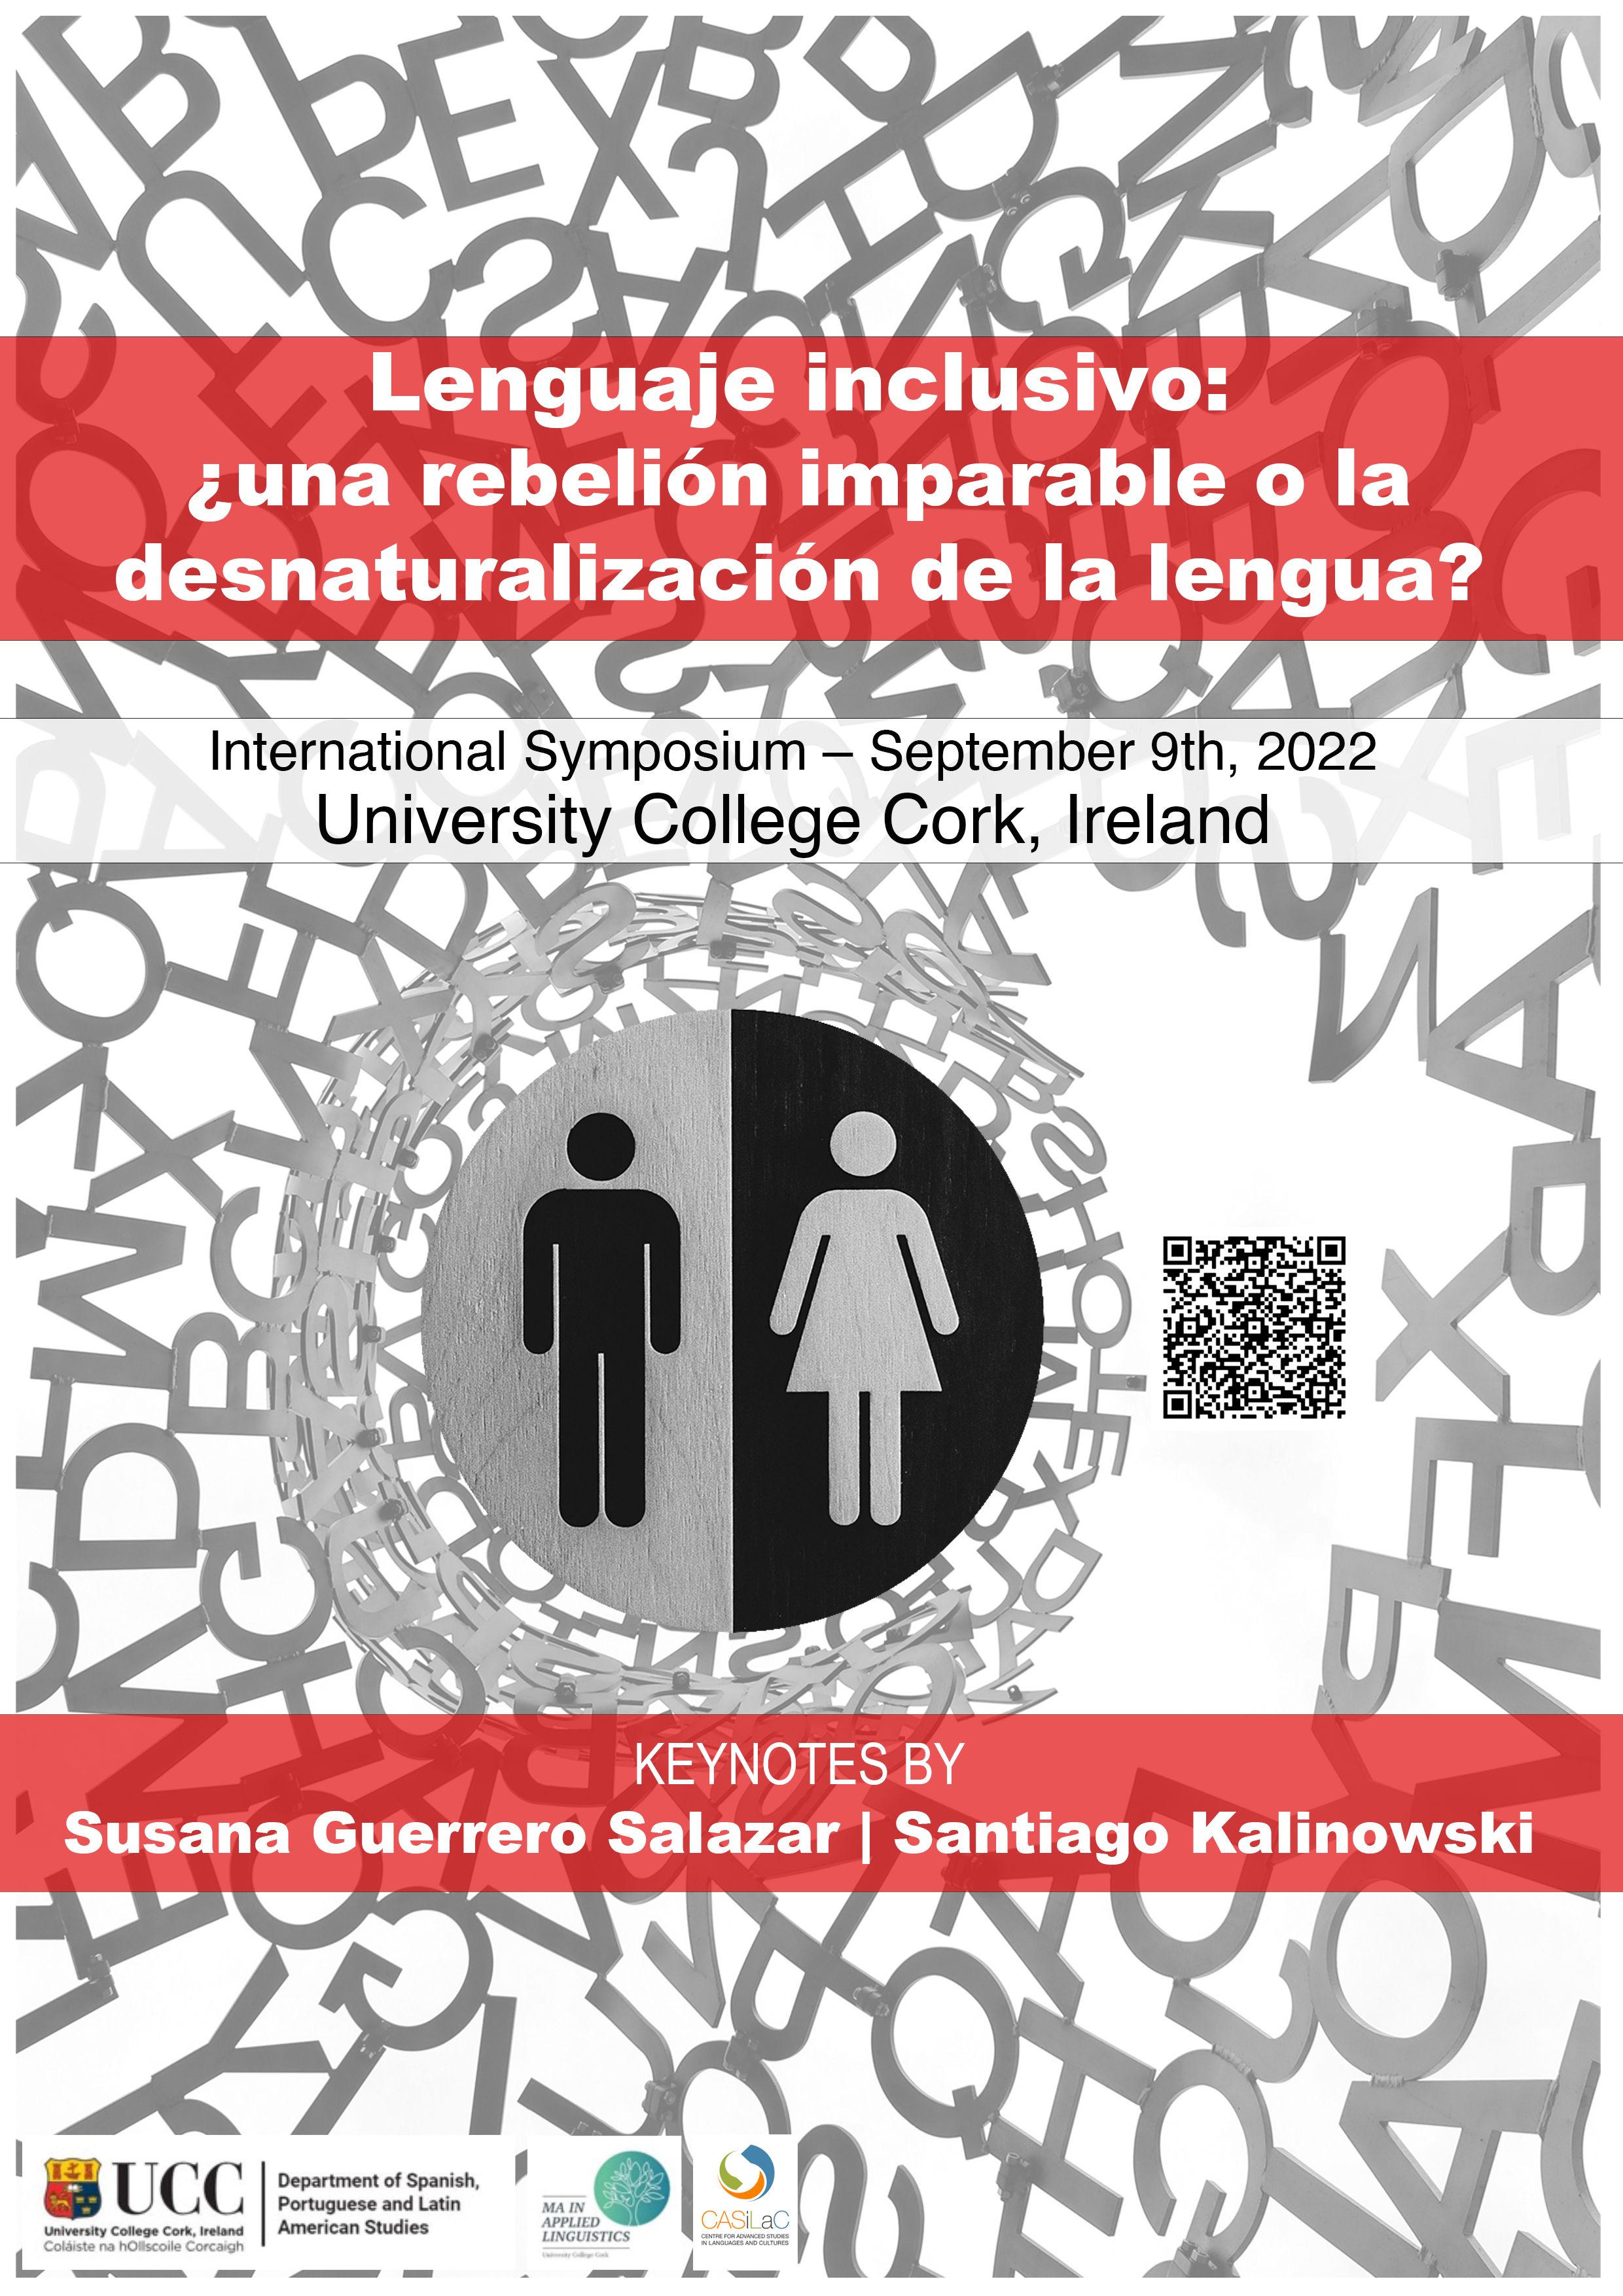 INTERNATIONAL SYMPOSIUM “Lenguaje inclusivo: ¿una rebelión imparable o la desnaturalización de la lengua?”